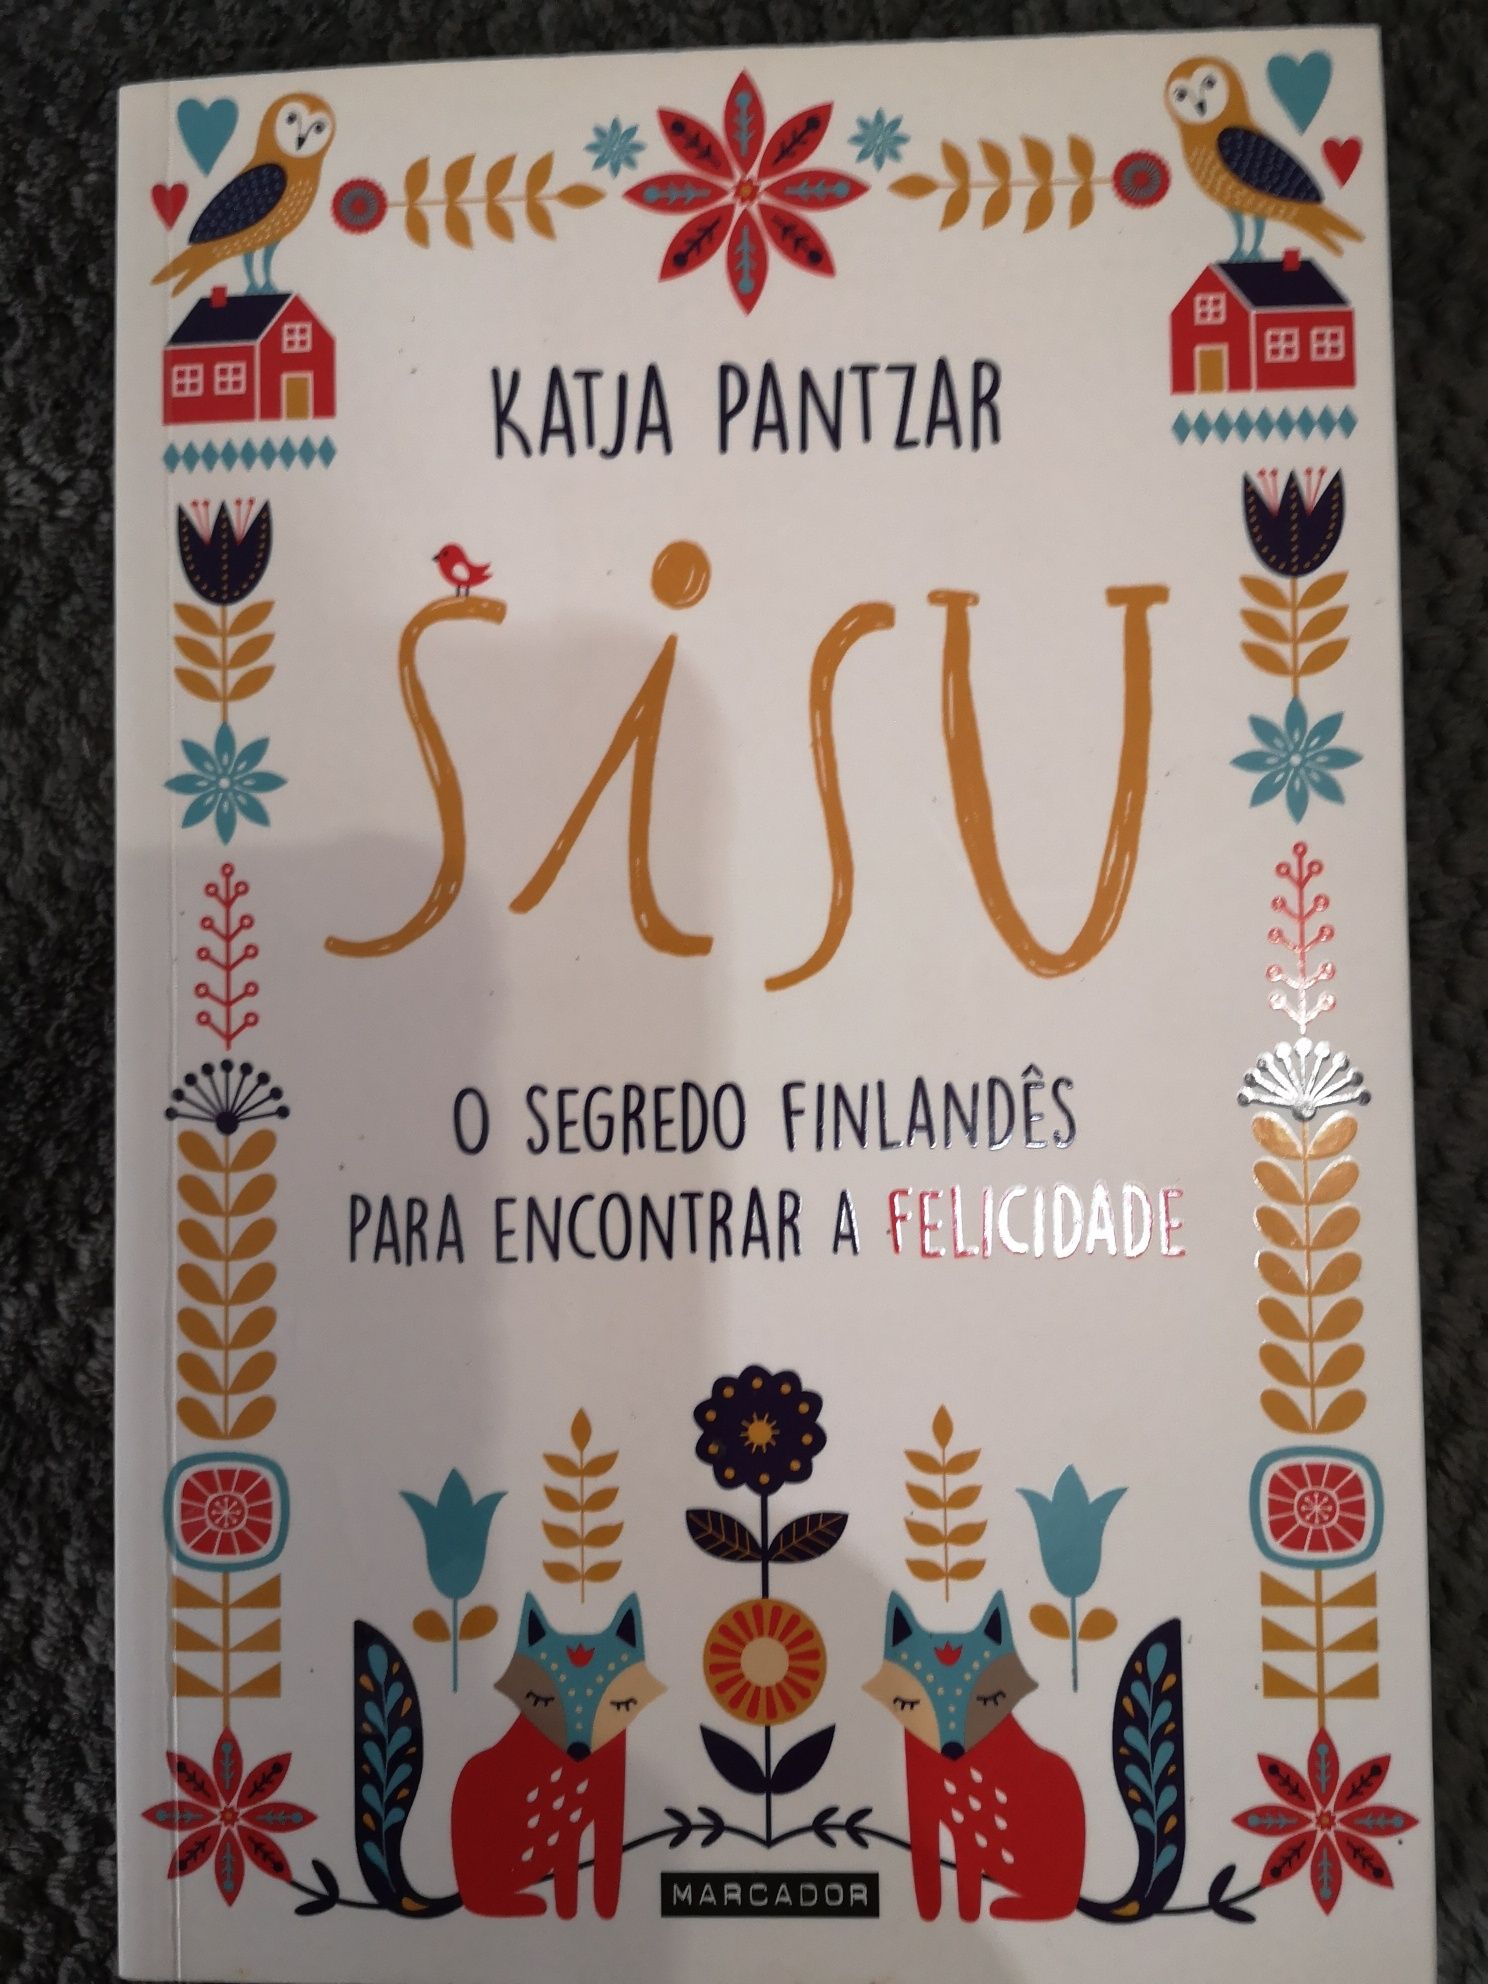 Sisu
O segredo Finlandês para encontrar a felicidade
de Katja Pantzar